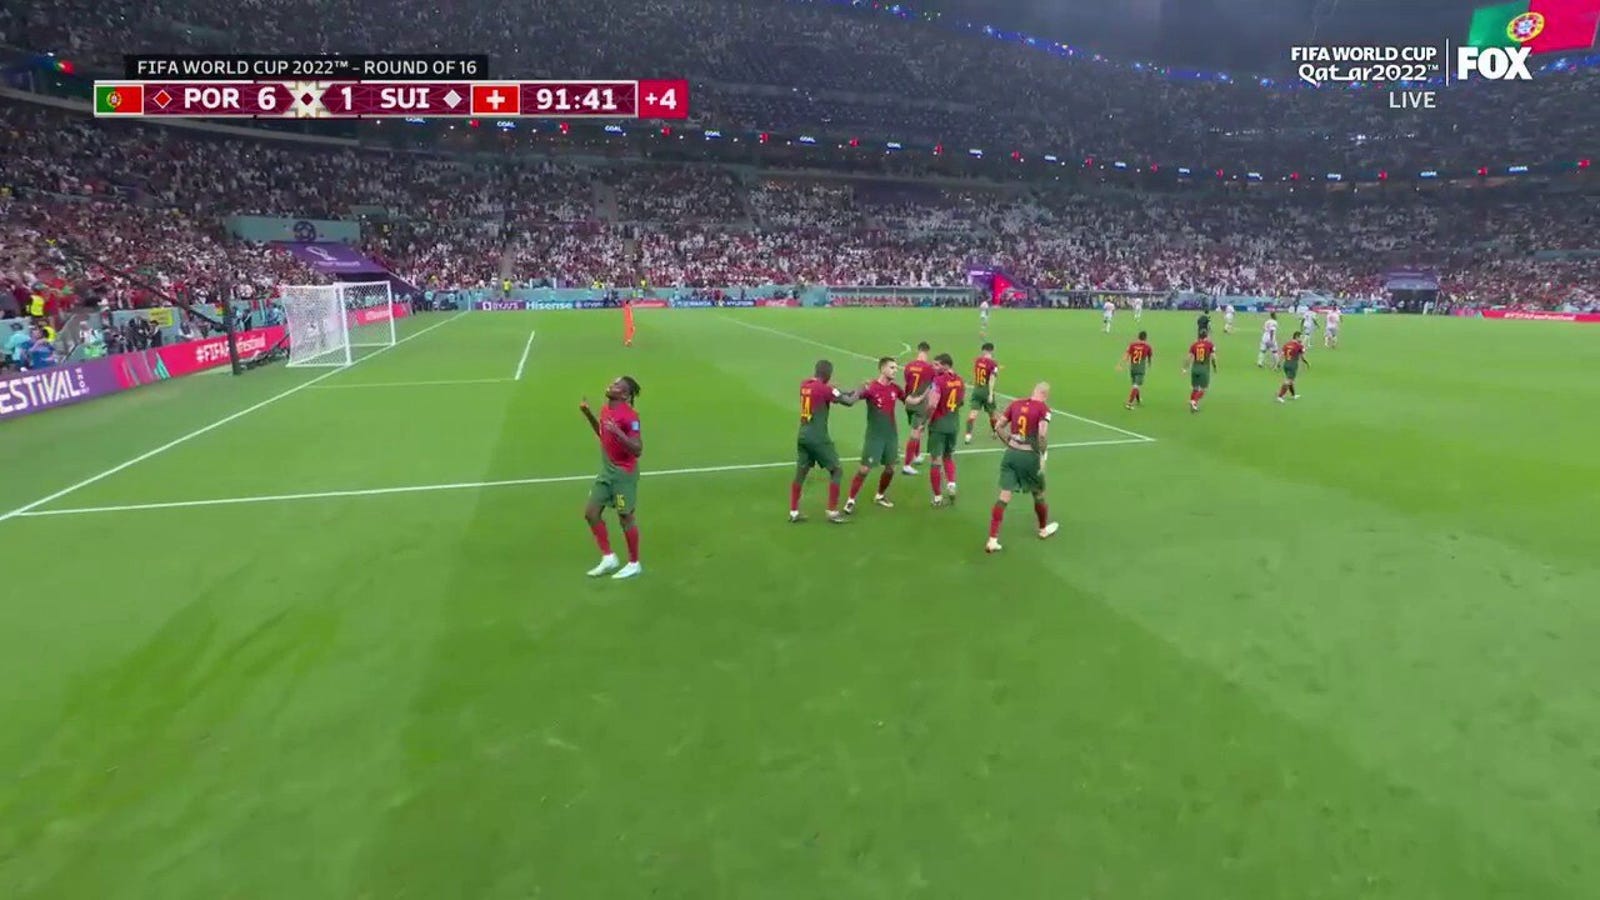 Portugal Rafael Leao scoort een doelpunt tegen Zwitserland 90 + 2'